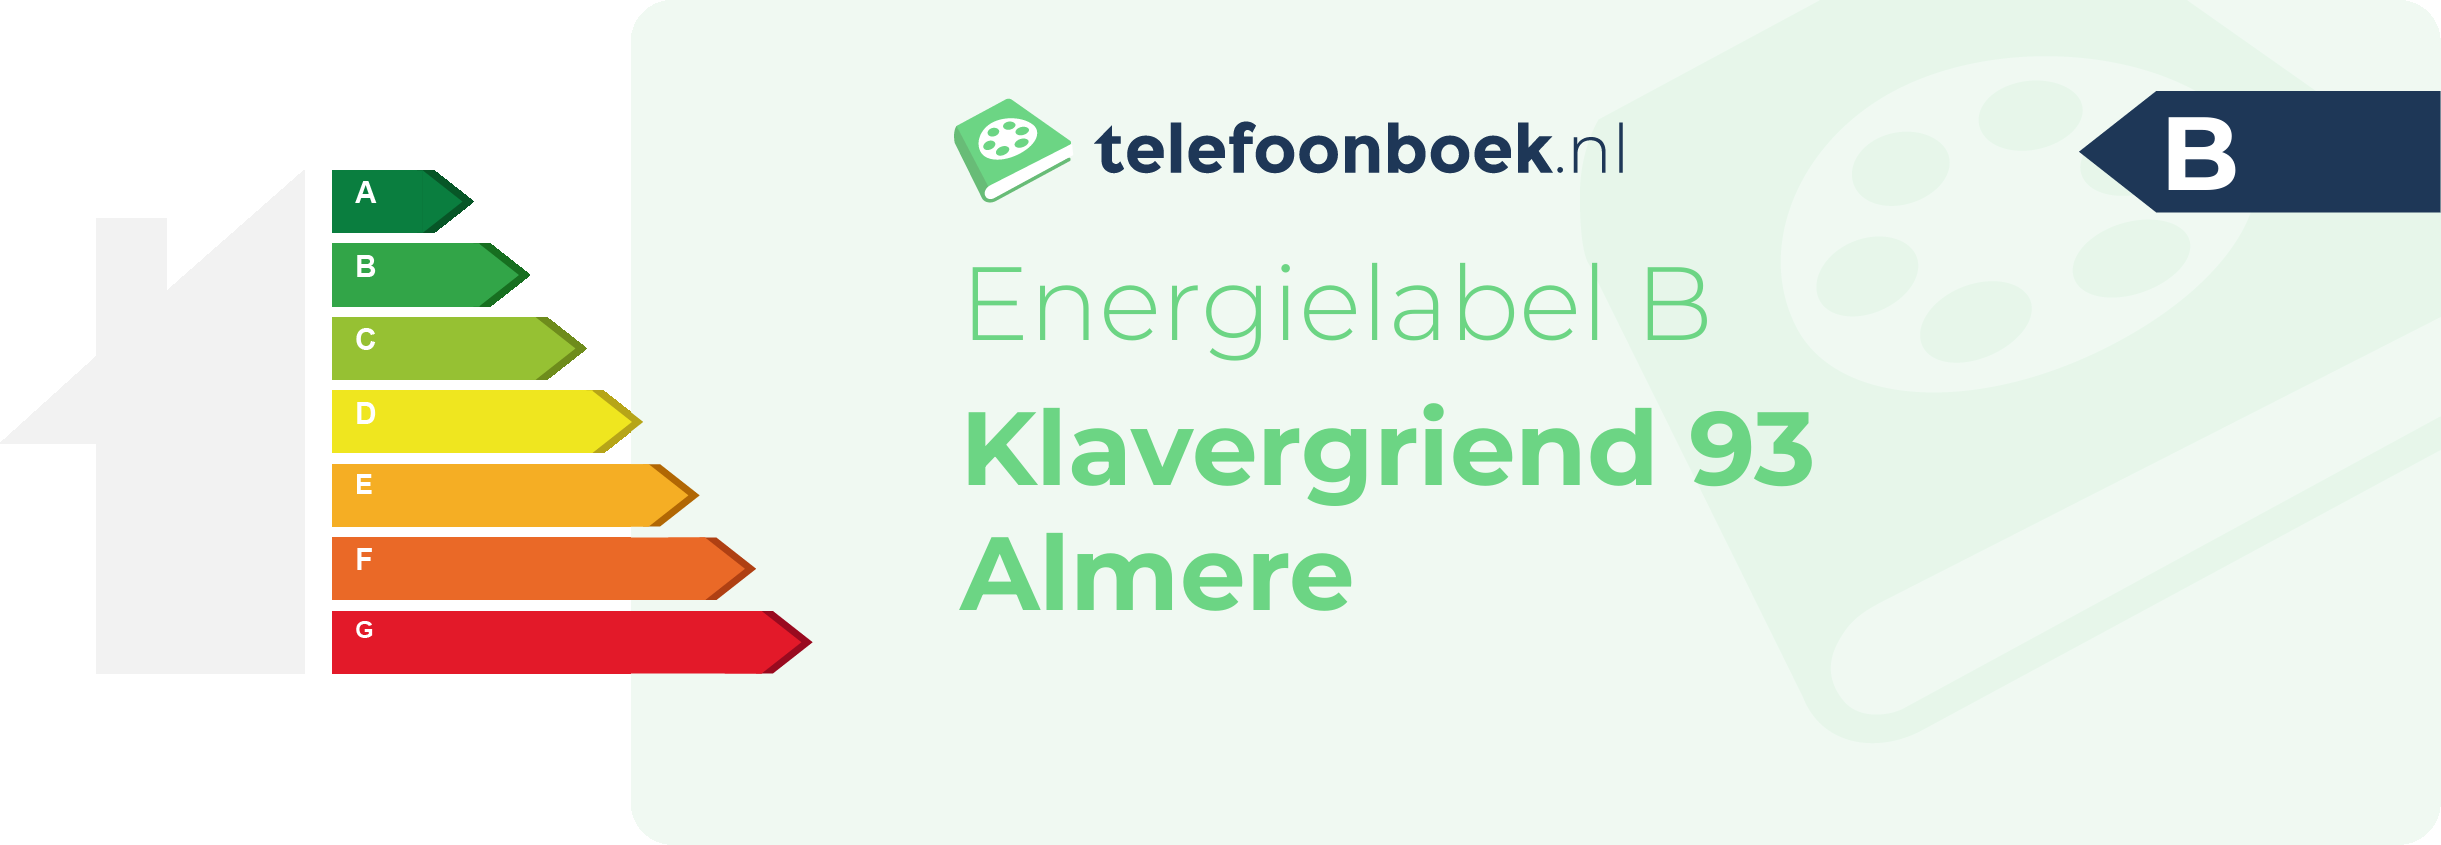 Energielabel Klavergriend 93 Almere